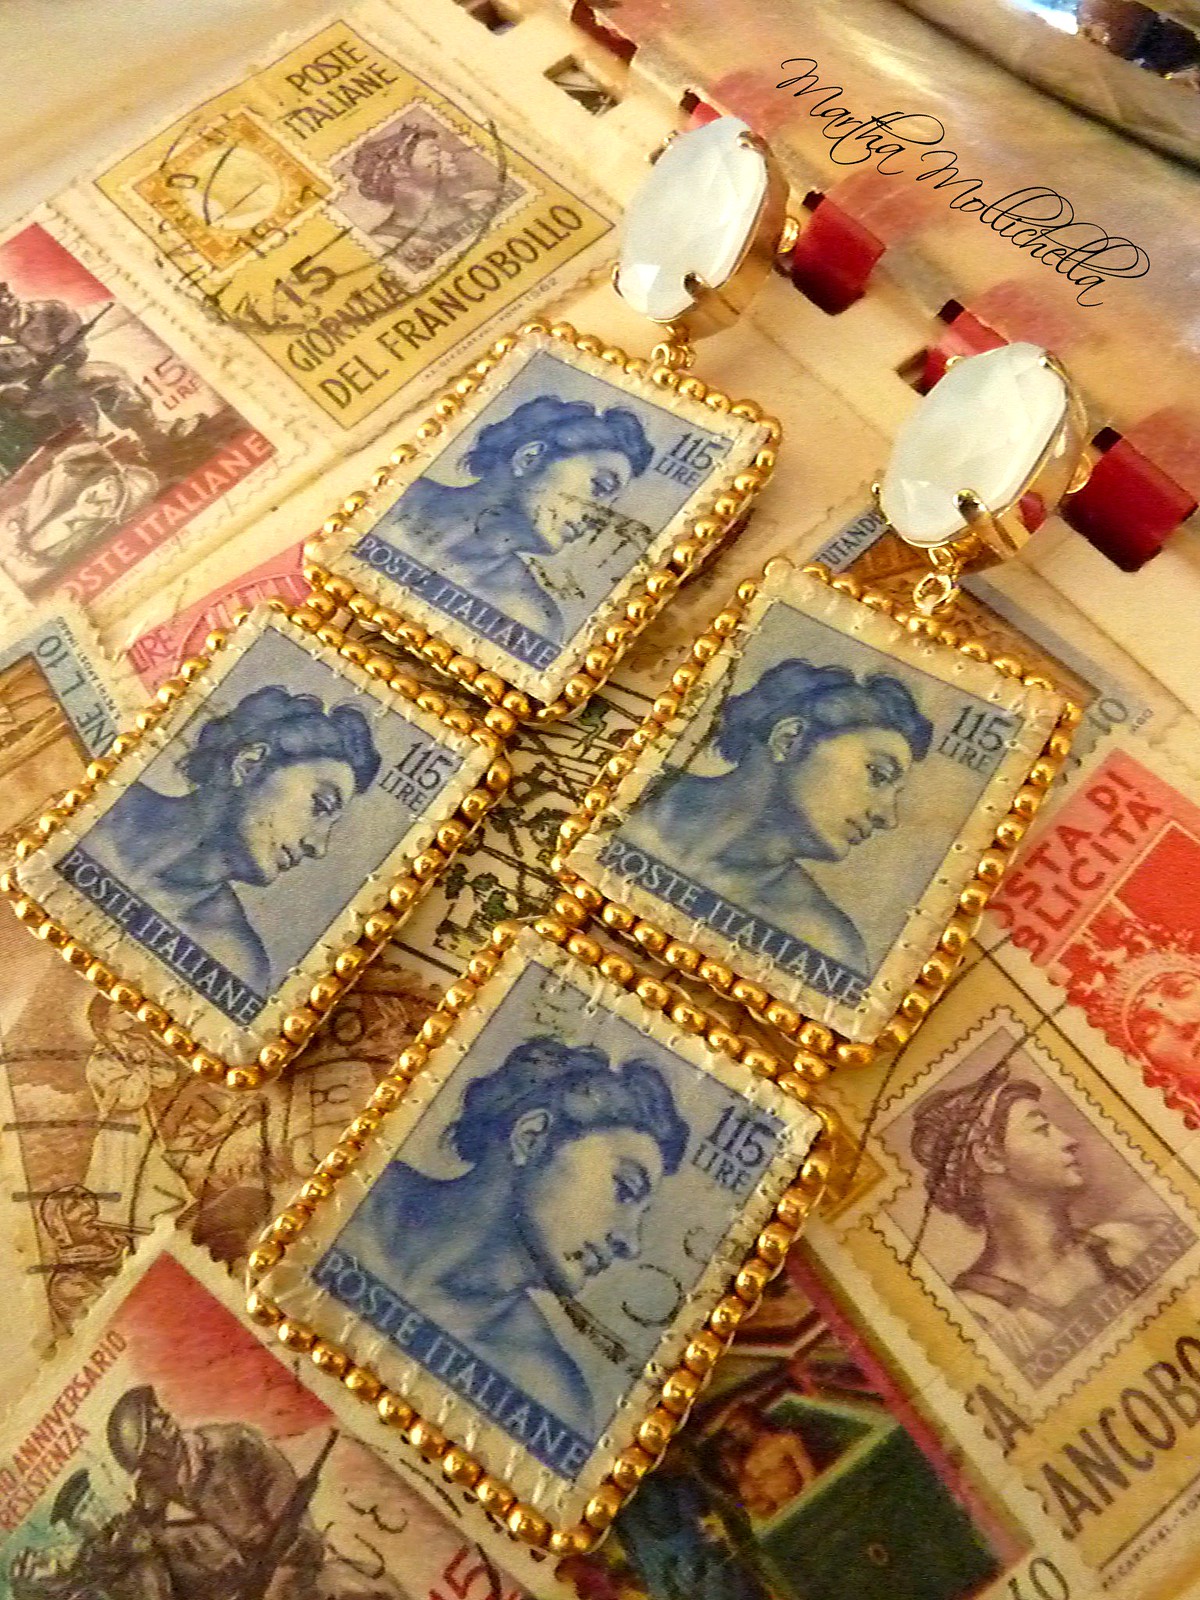 Filatelia, collezionismo di francobolli, gioielli filatelici, gioielli francobolli, francobolli fatti a mano da Martha Mollichella